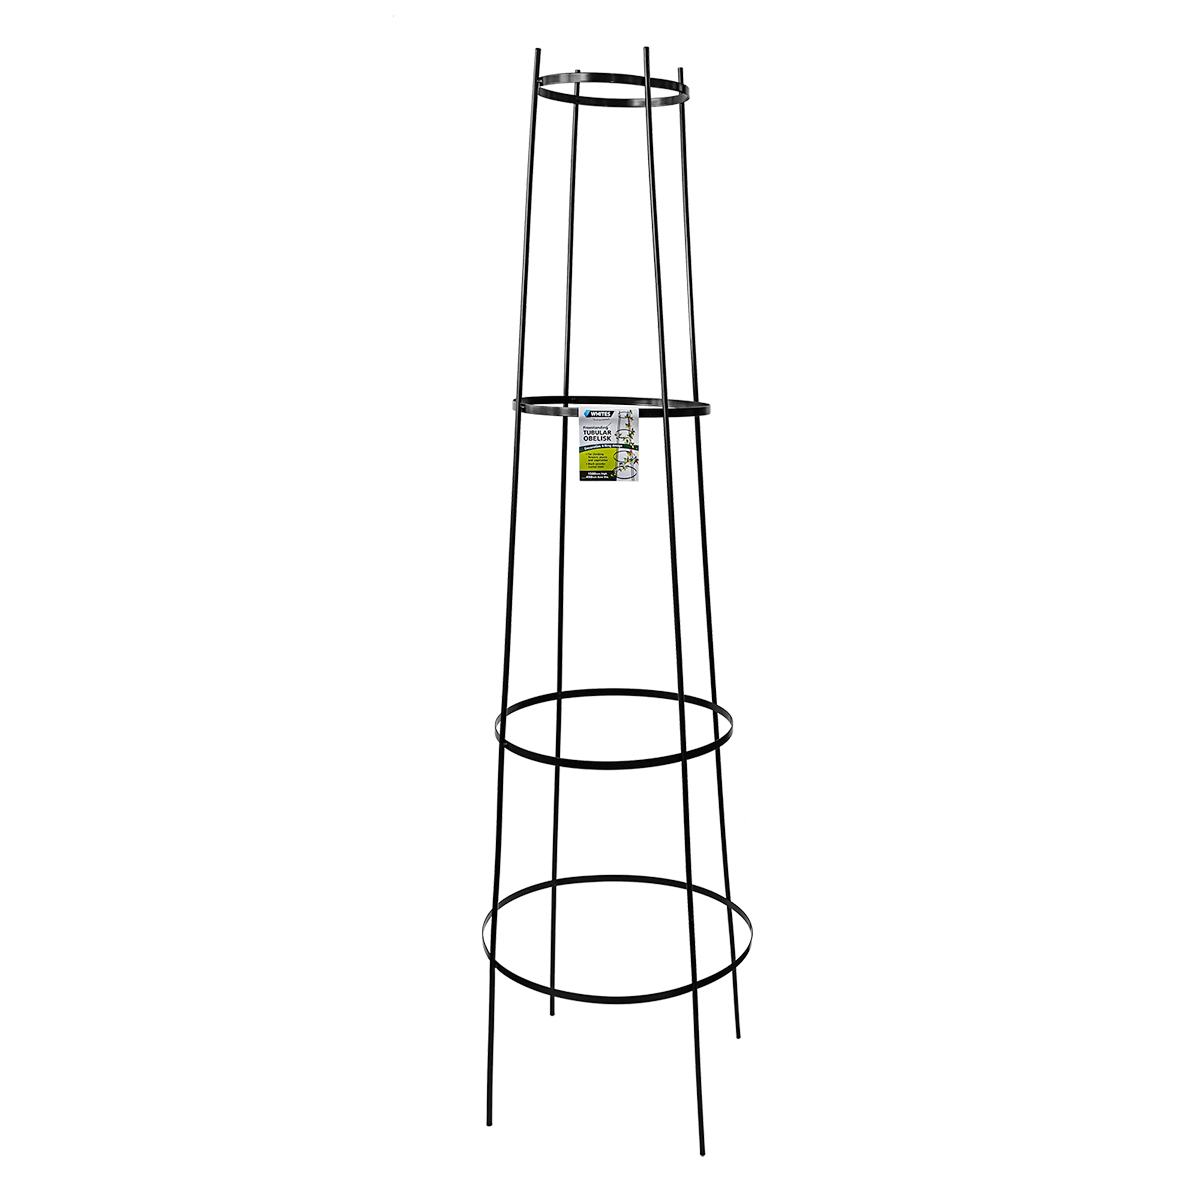 18554 - Freestanding Tubular Obelisk 1500x450mm